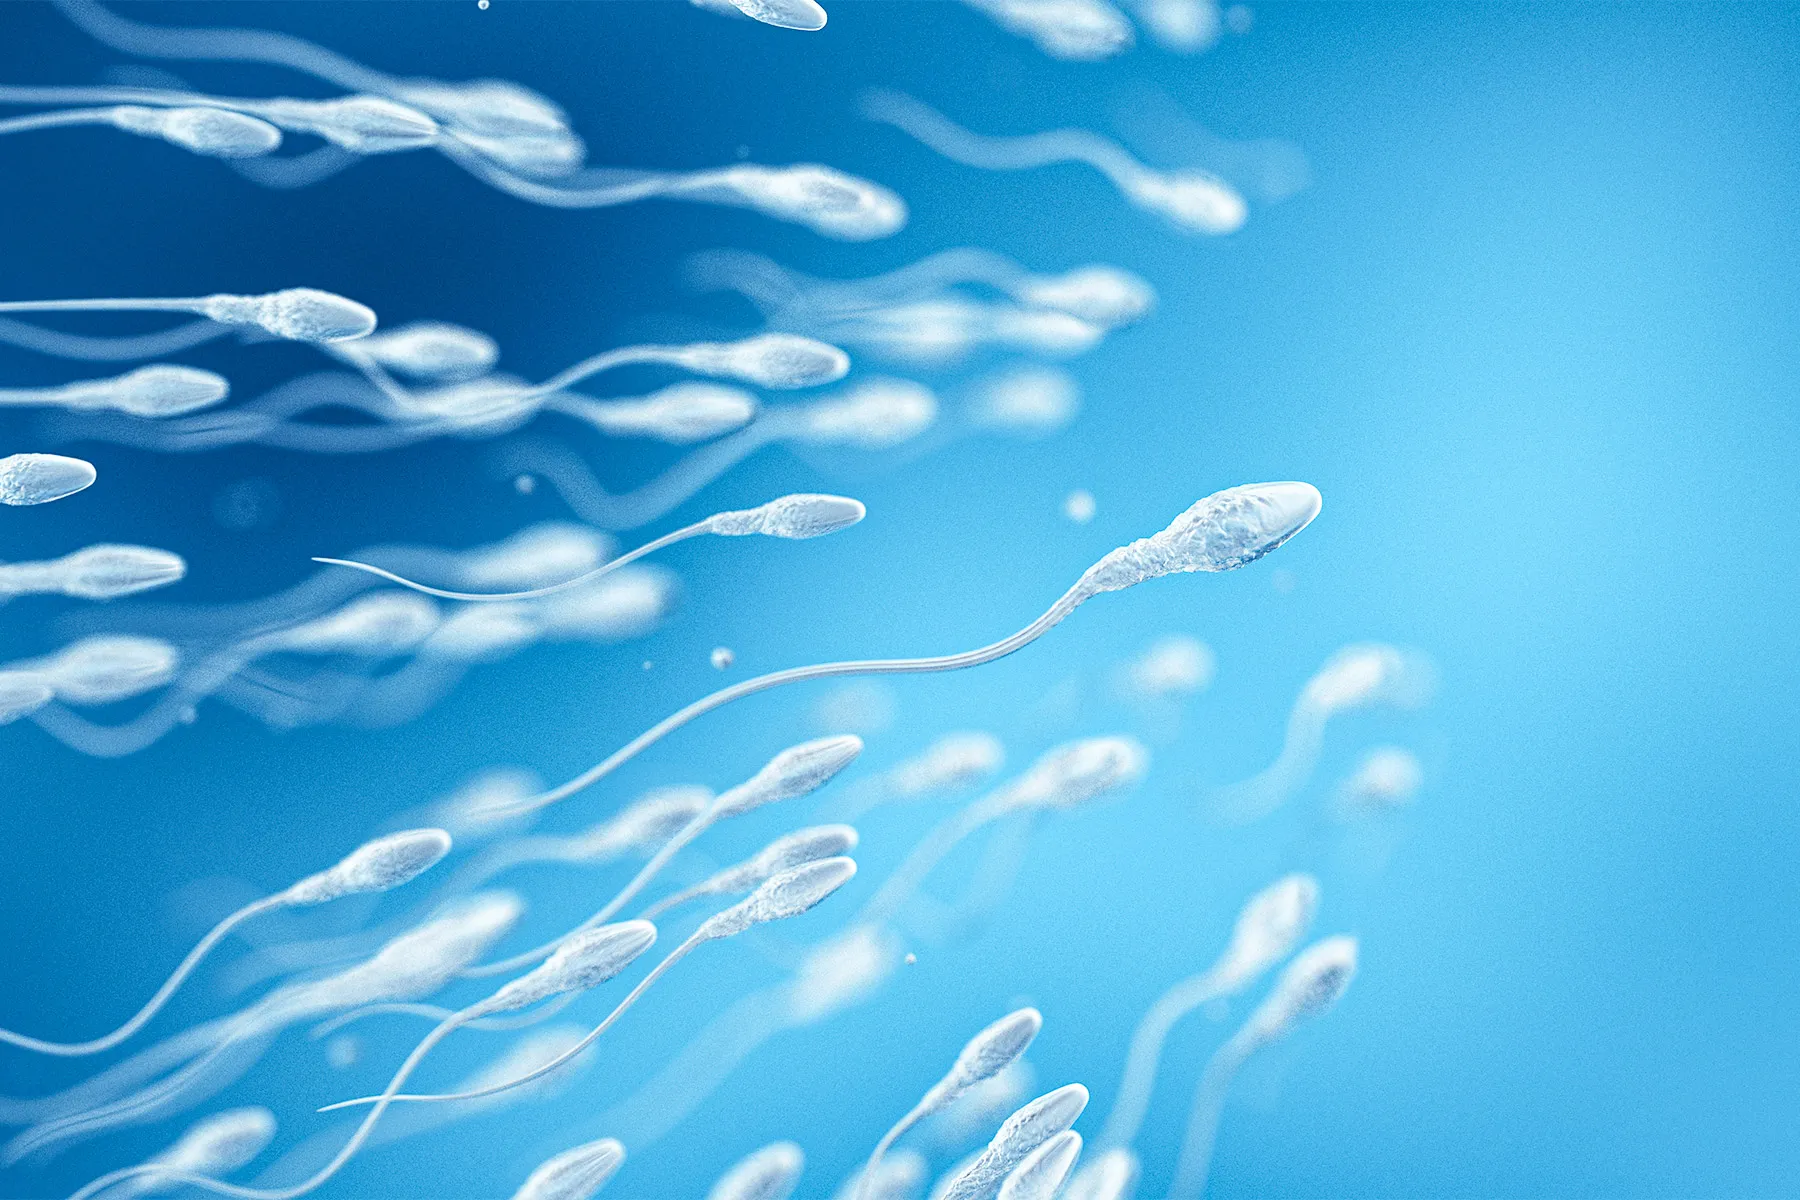 Sperm: How Long Sperm Live, Sperm Count, and More